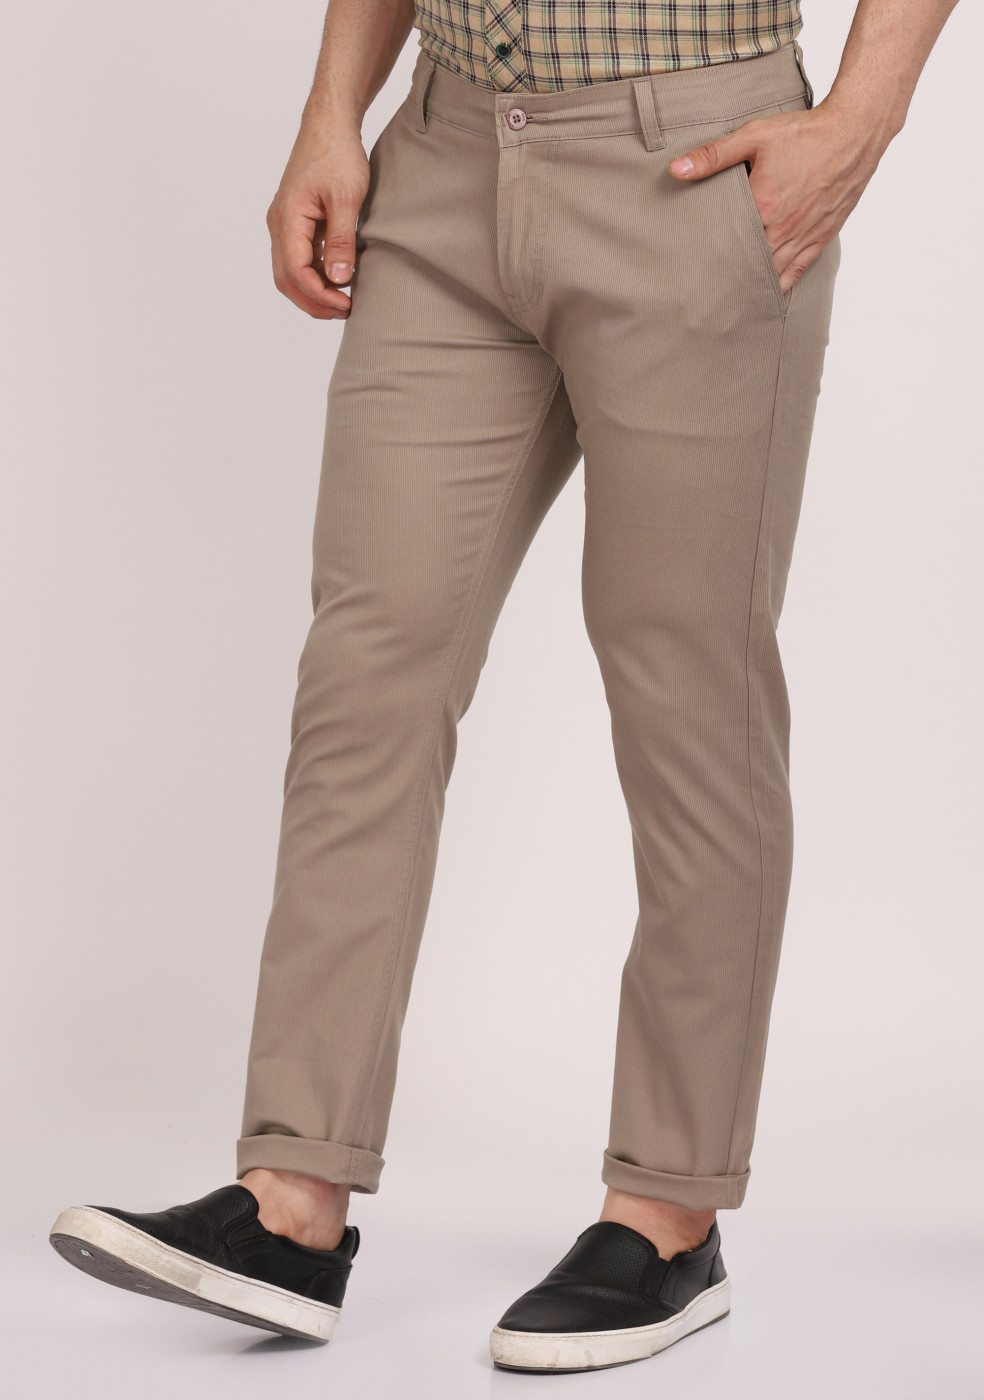 ASHTOM Gray Formal Cotton Trouser Regular Fit For Men